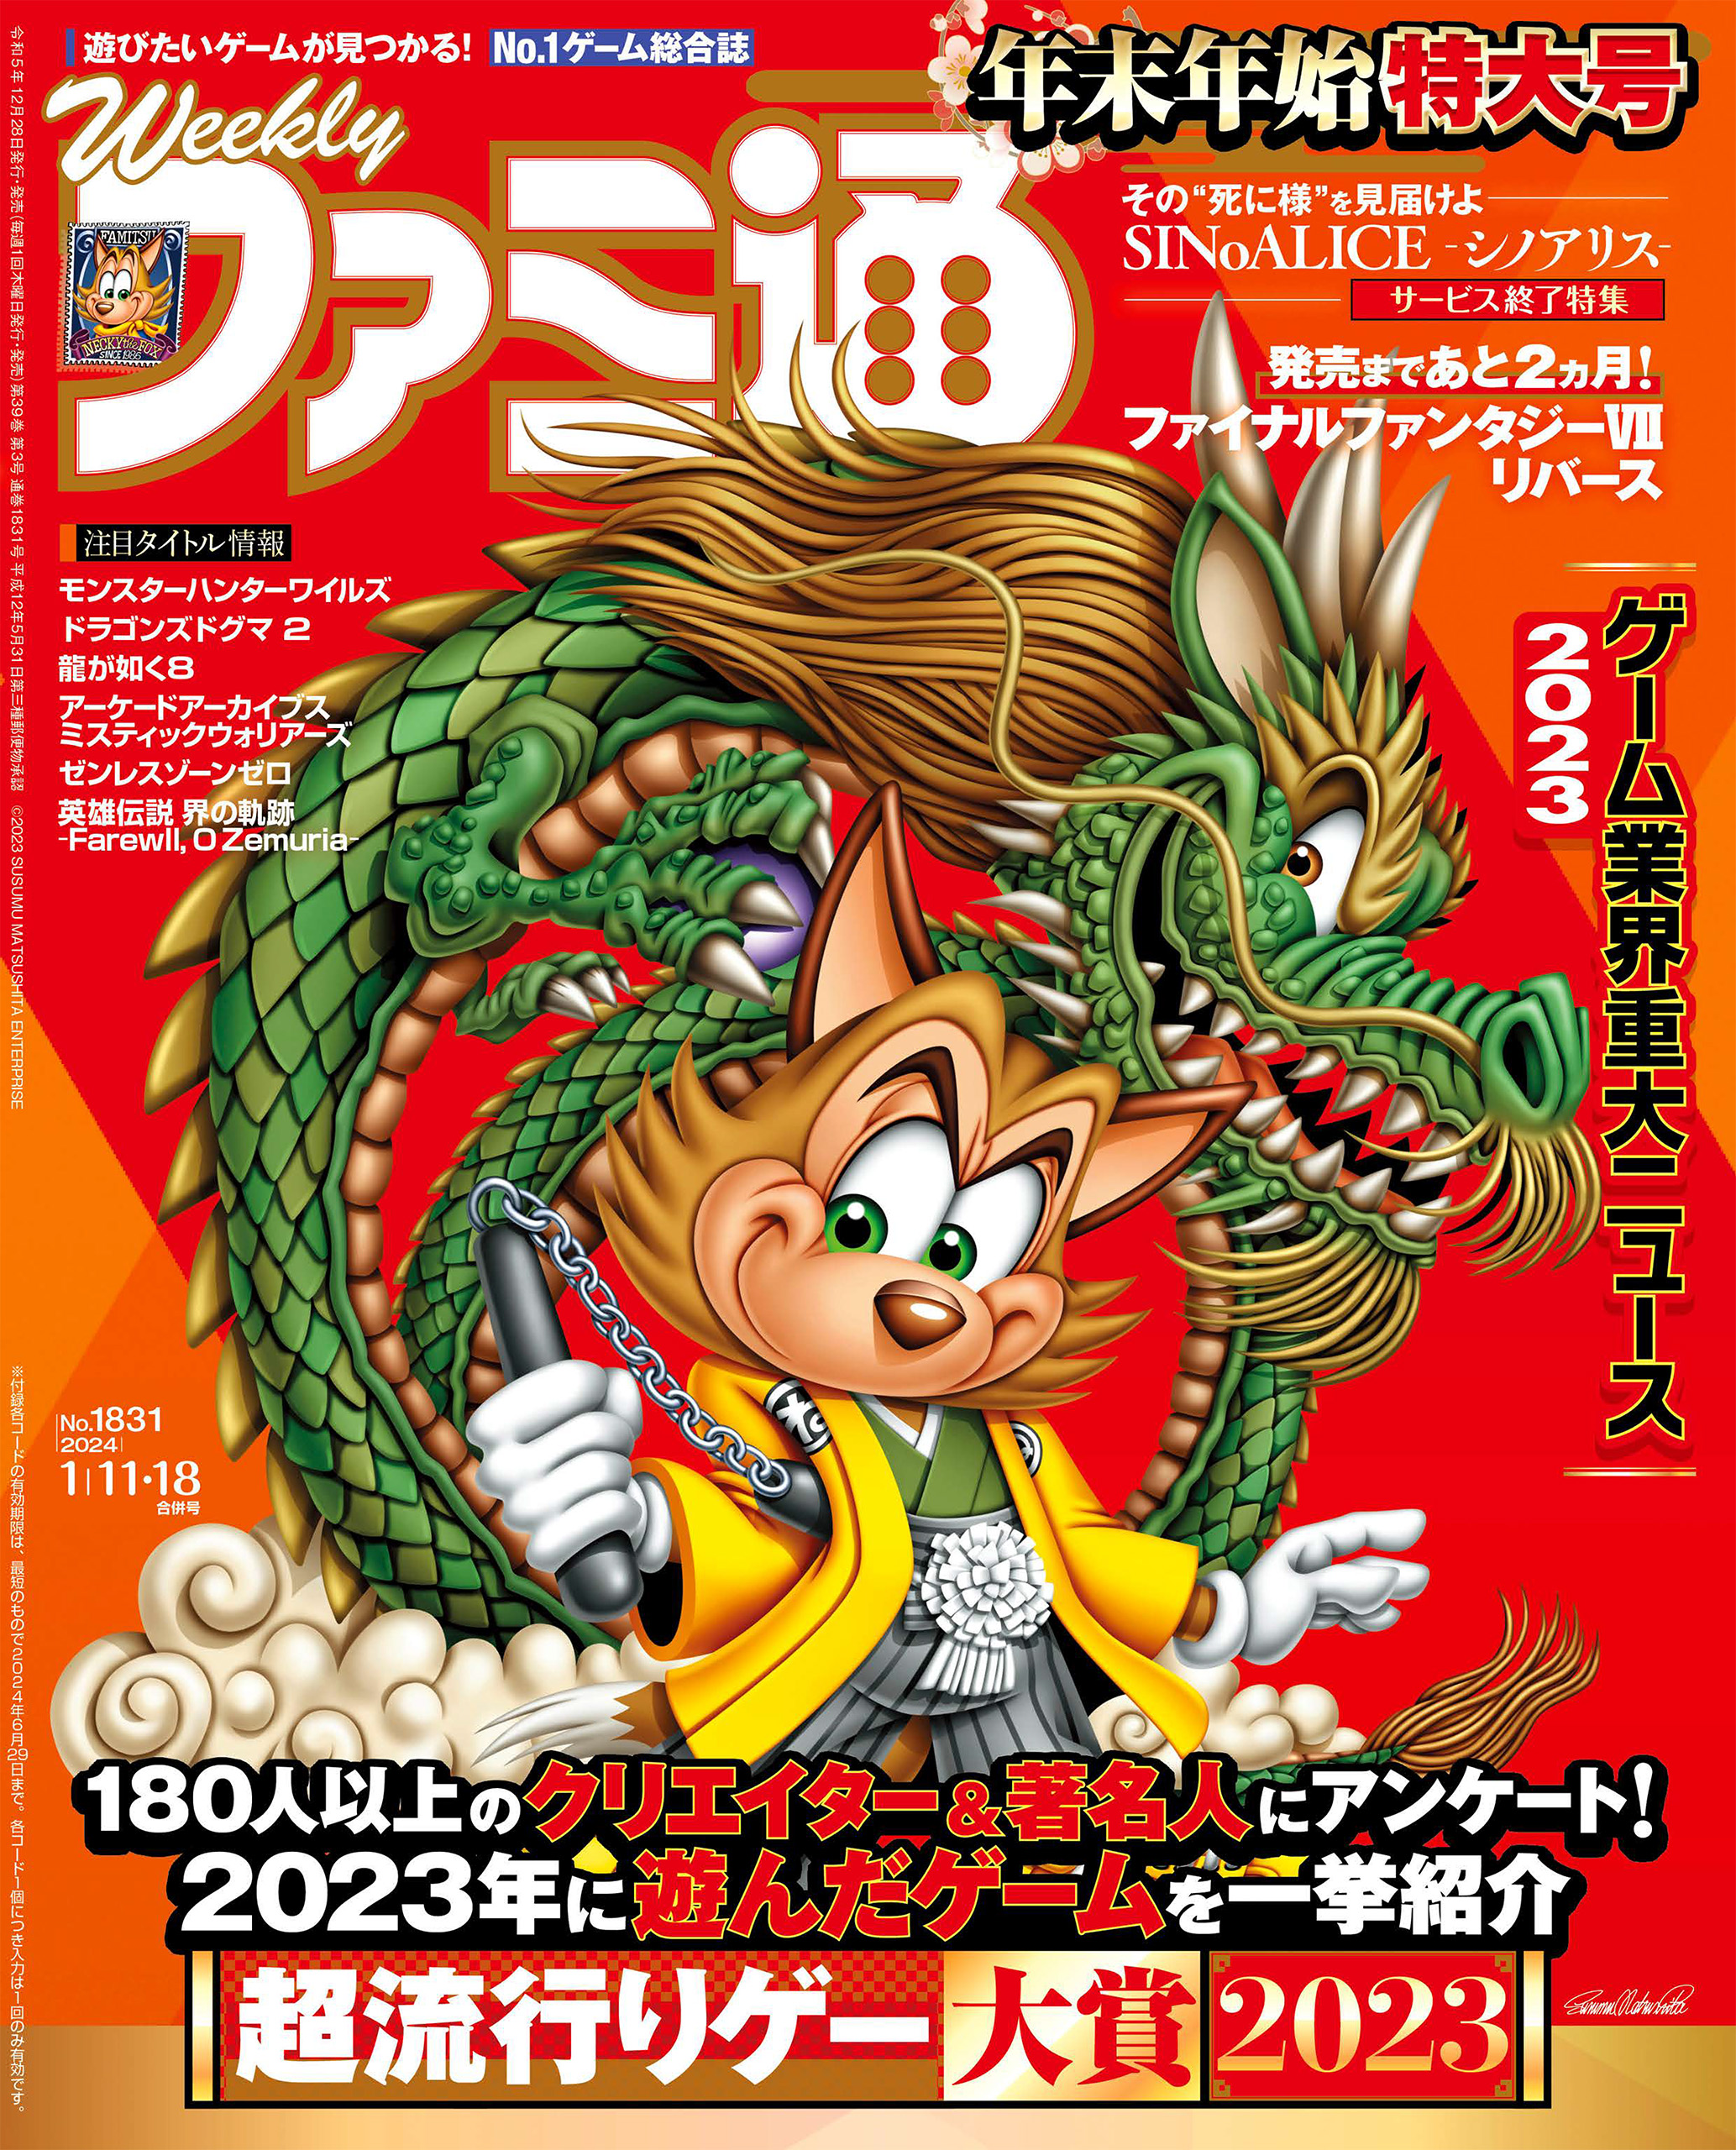 【値段通販】ゲーム雑誌 ファミ通ブロス 1999年1月号 ASPECT テレビゲーム